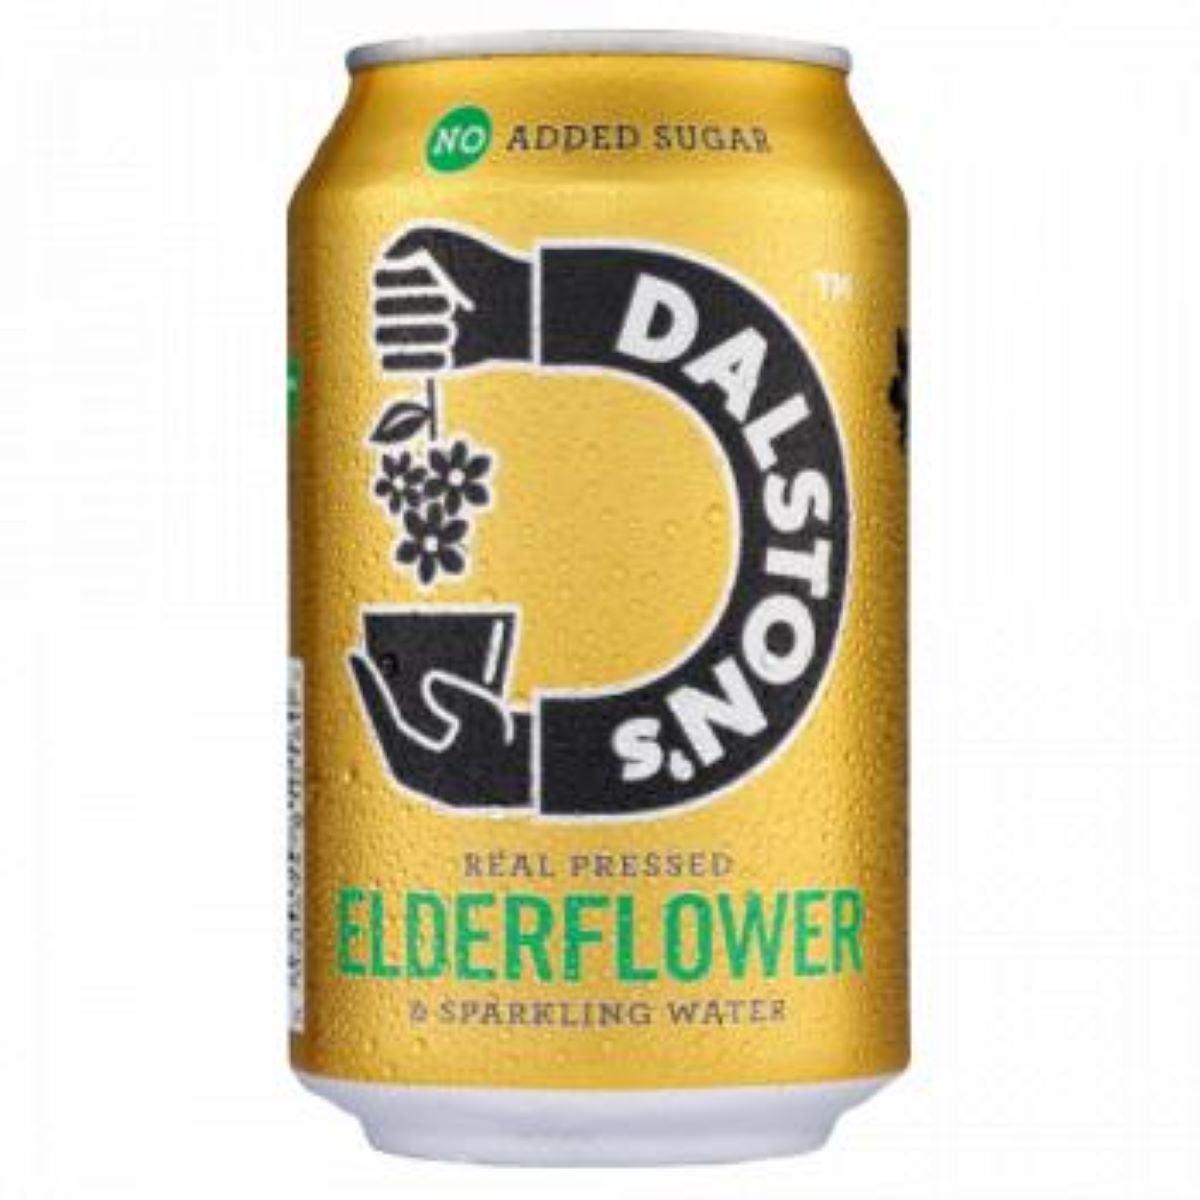 Dalston's Elderflower No Added SugaR 300ml